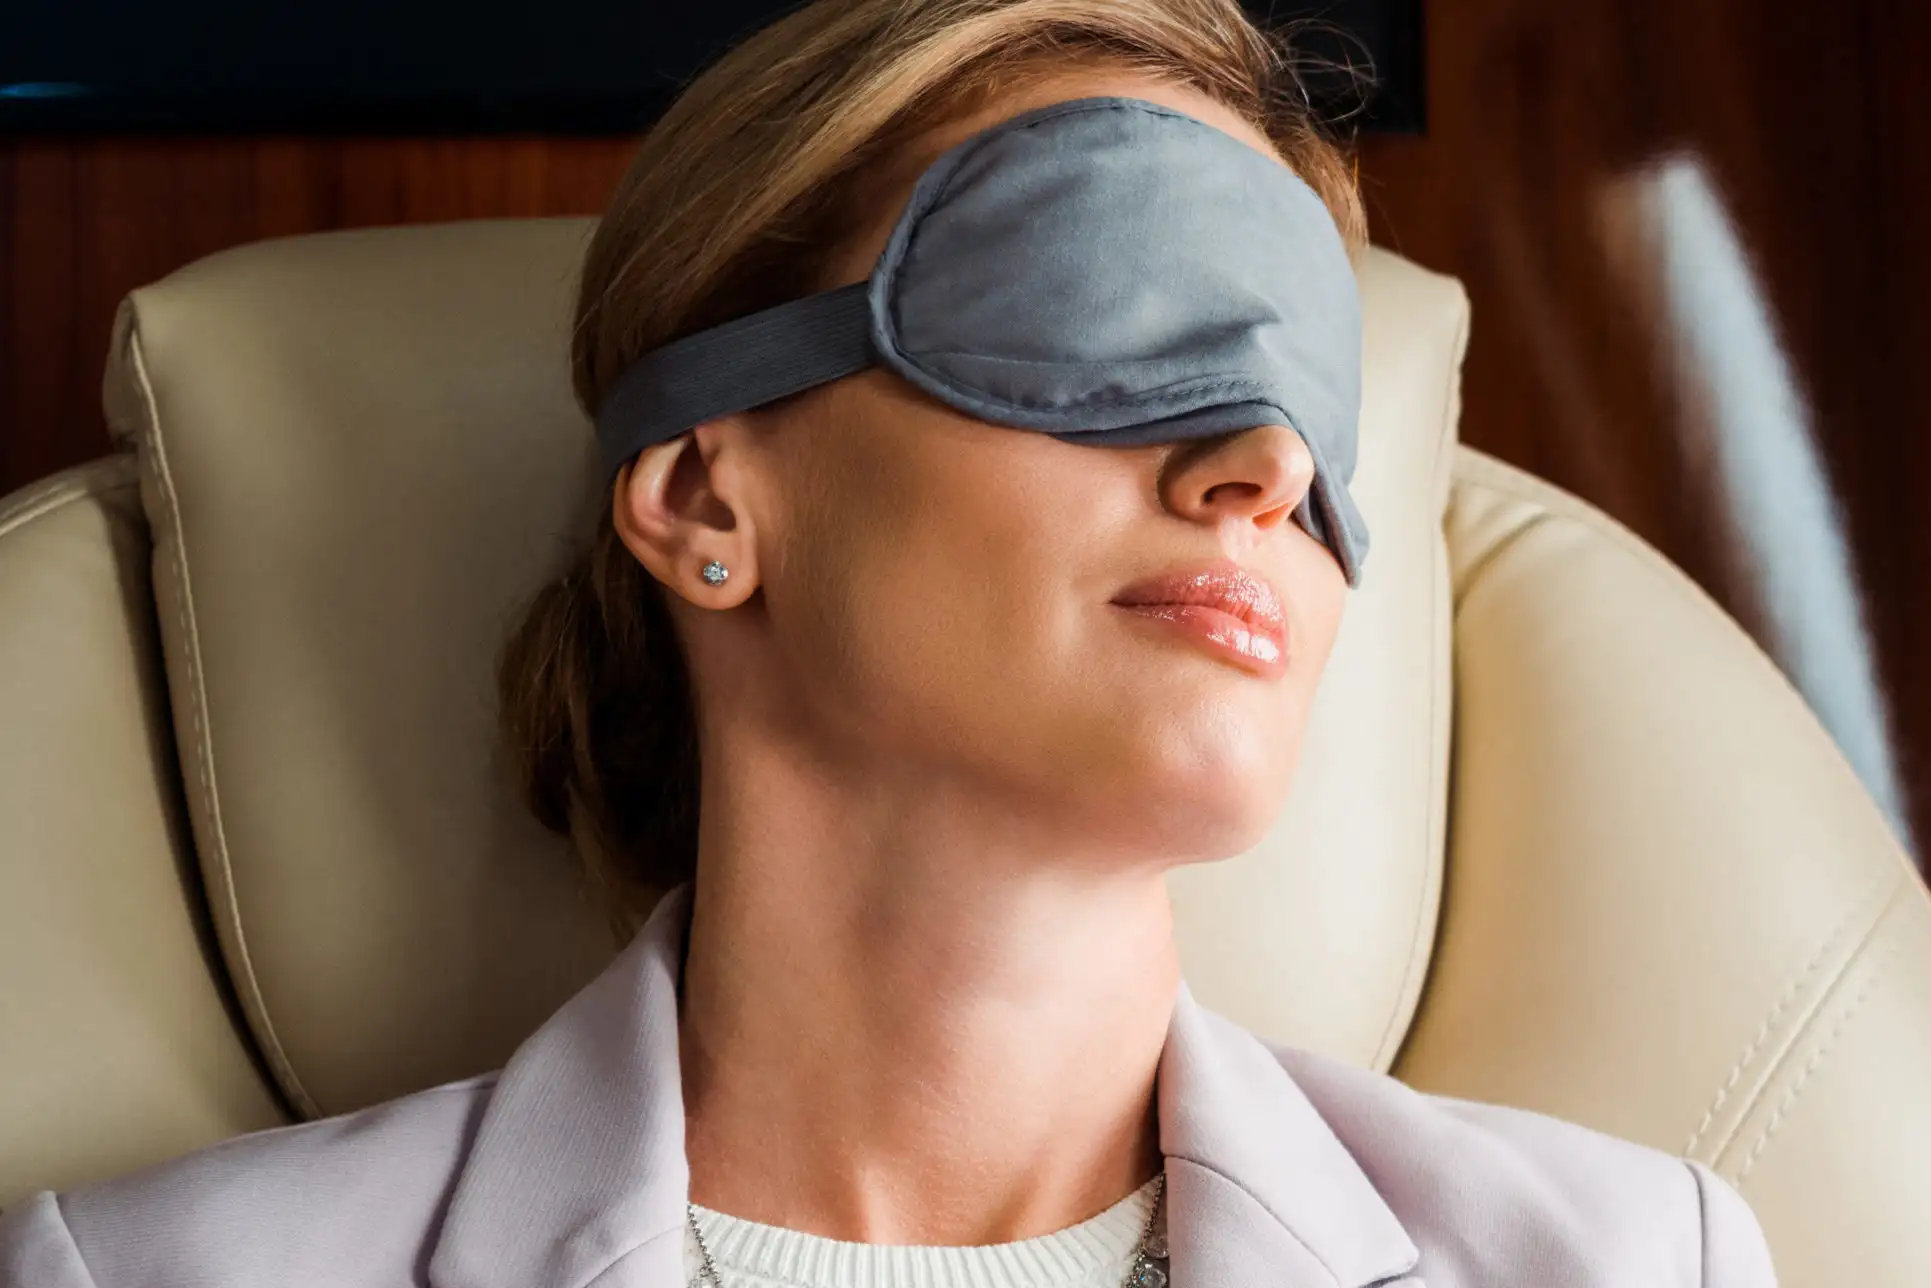 Woman sleeping on plane wearing a sleep mask